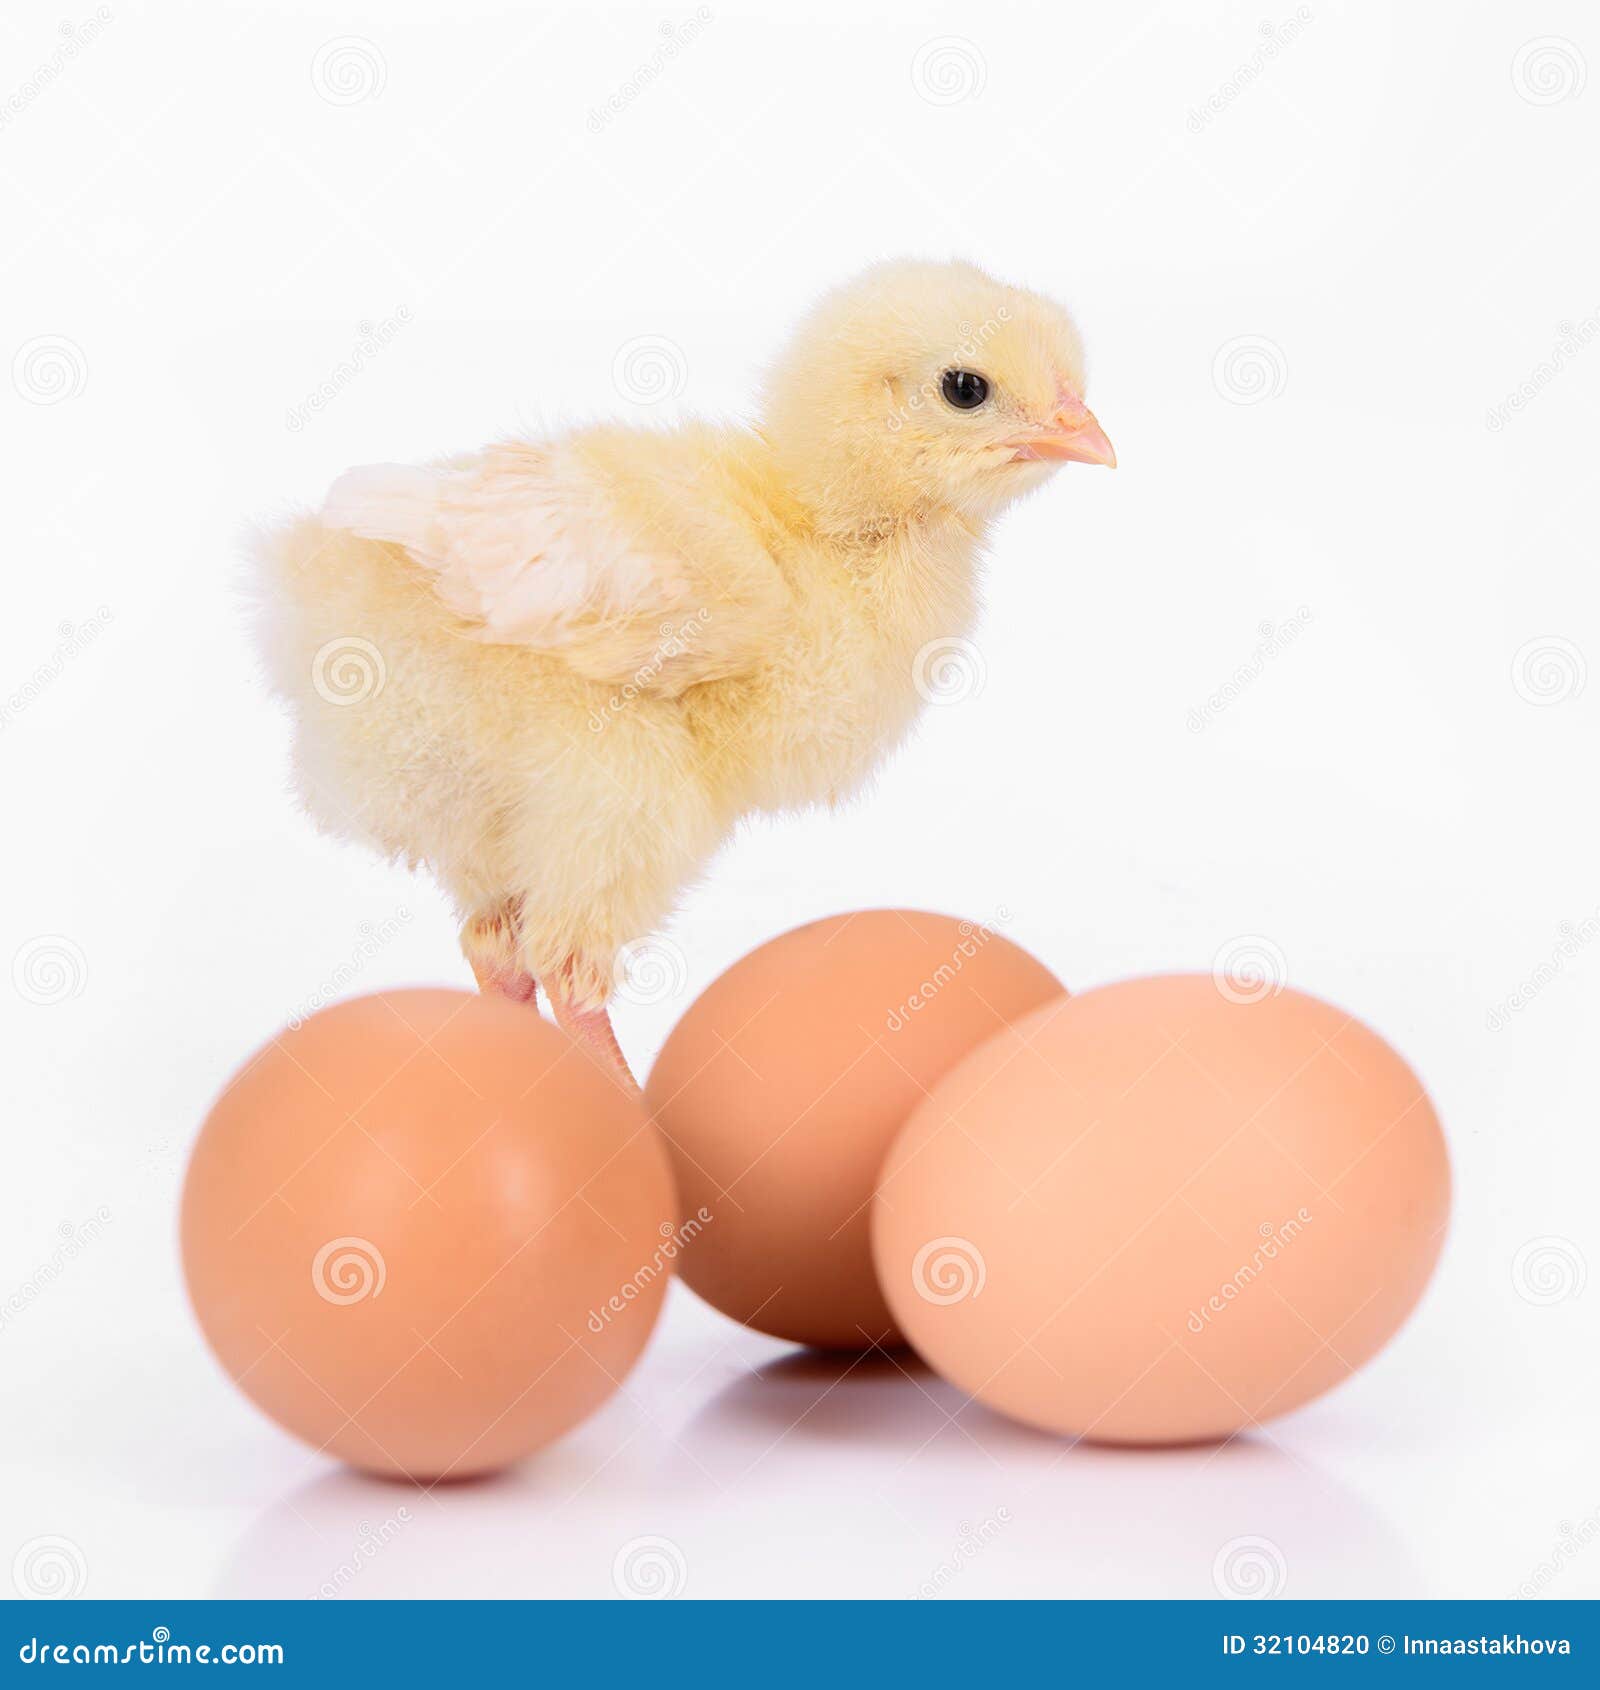 Huevos y pollo. Tres huevos marrones y pollo amarillo recién nacido aislados en un fondo blanco